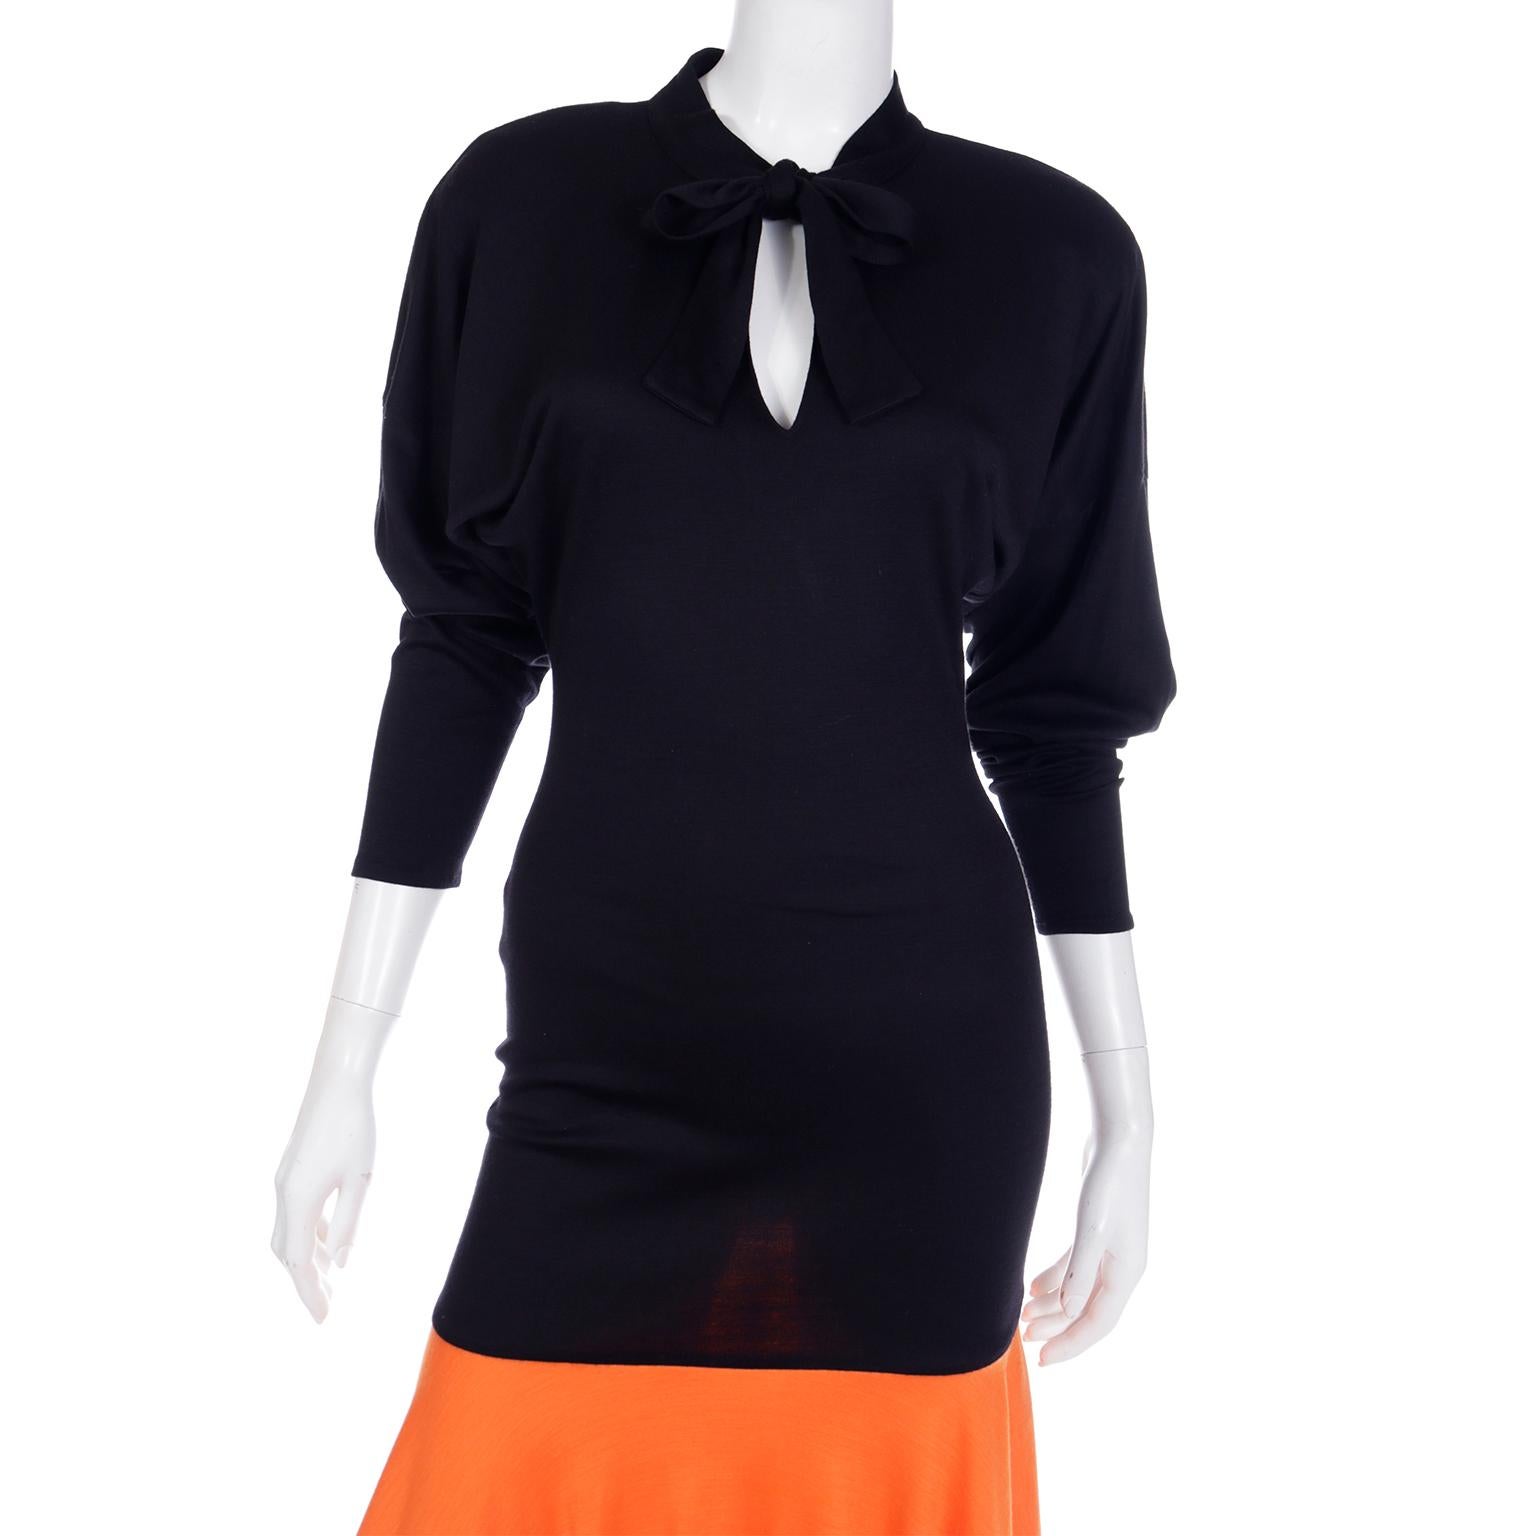 Rare Patrick Kelly Paris F/W 1988 Black & Orange Color Block Vintage Dress For Sale 4